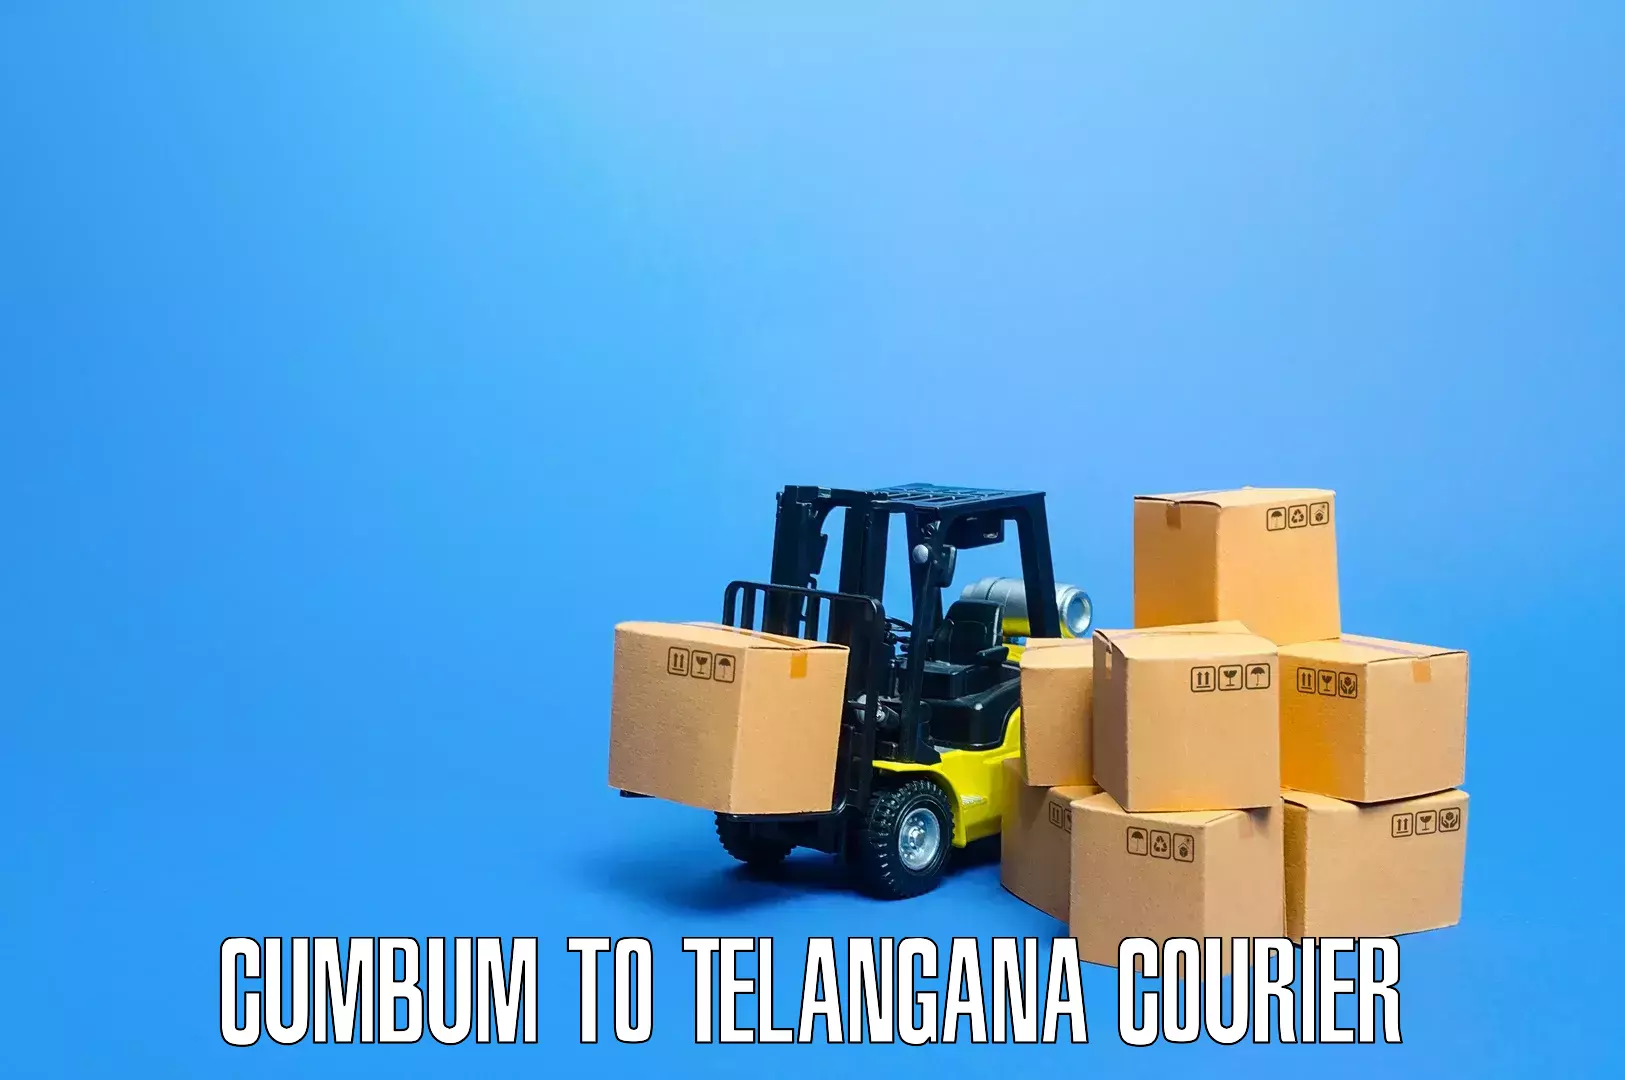 Efficient relocation services Cumbum to Telangana